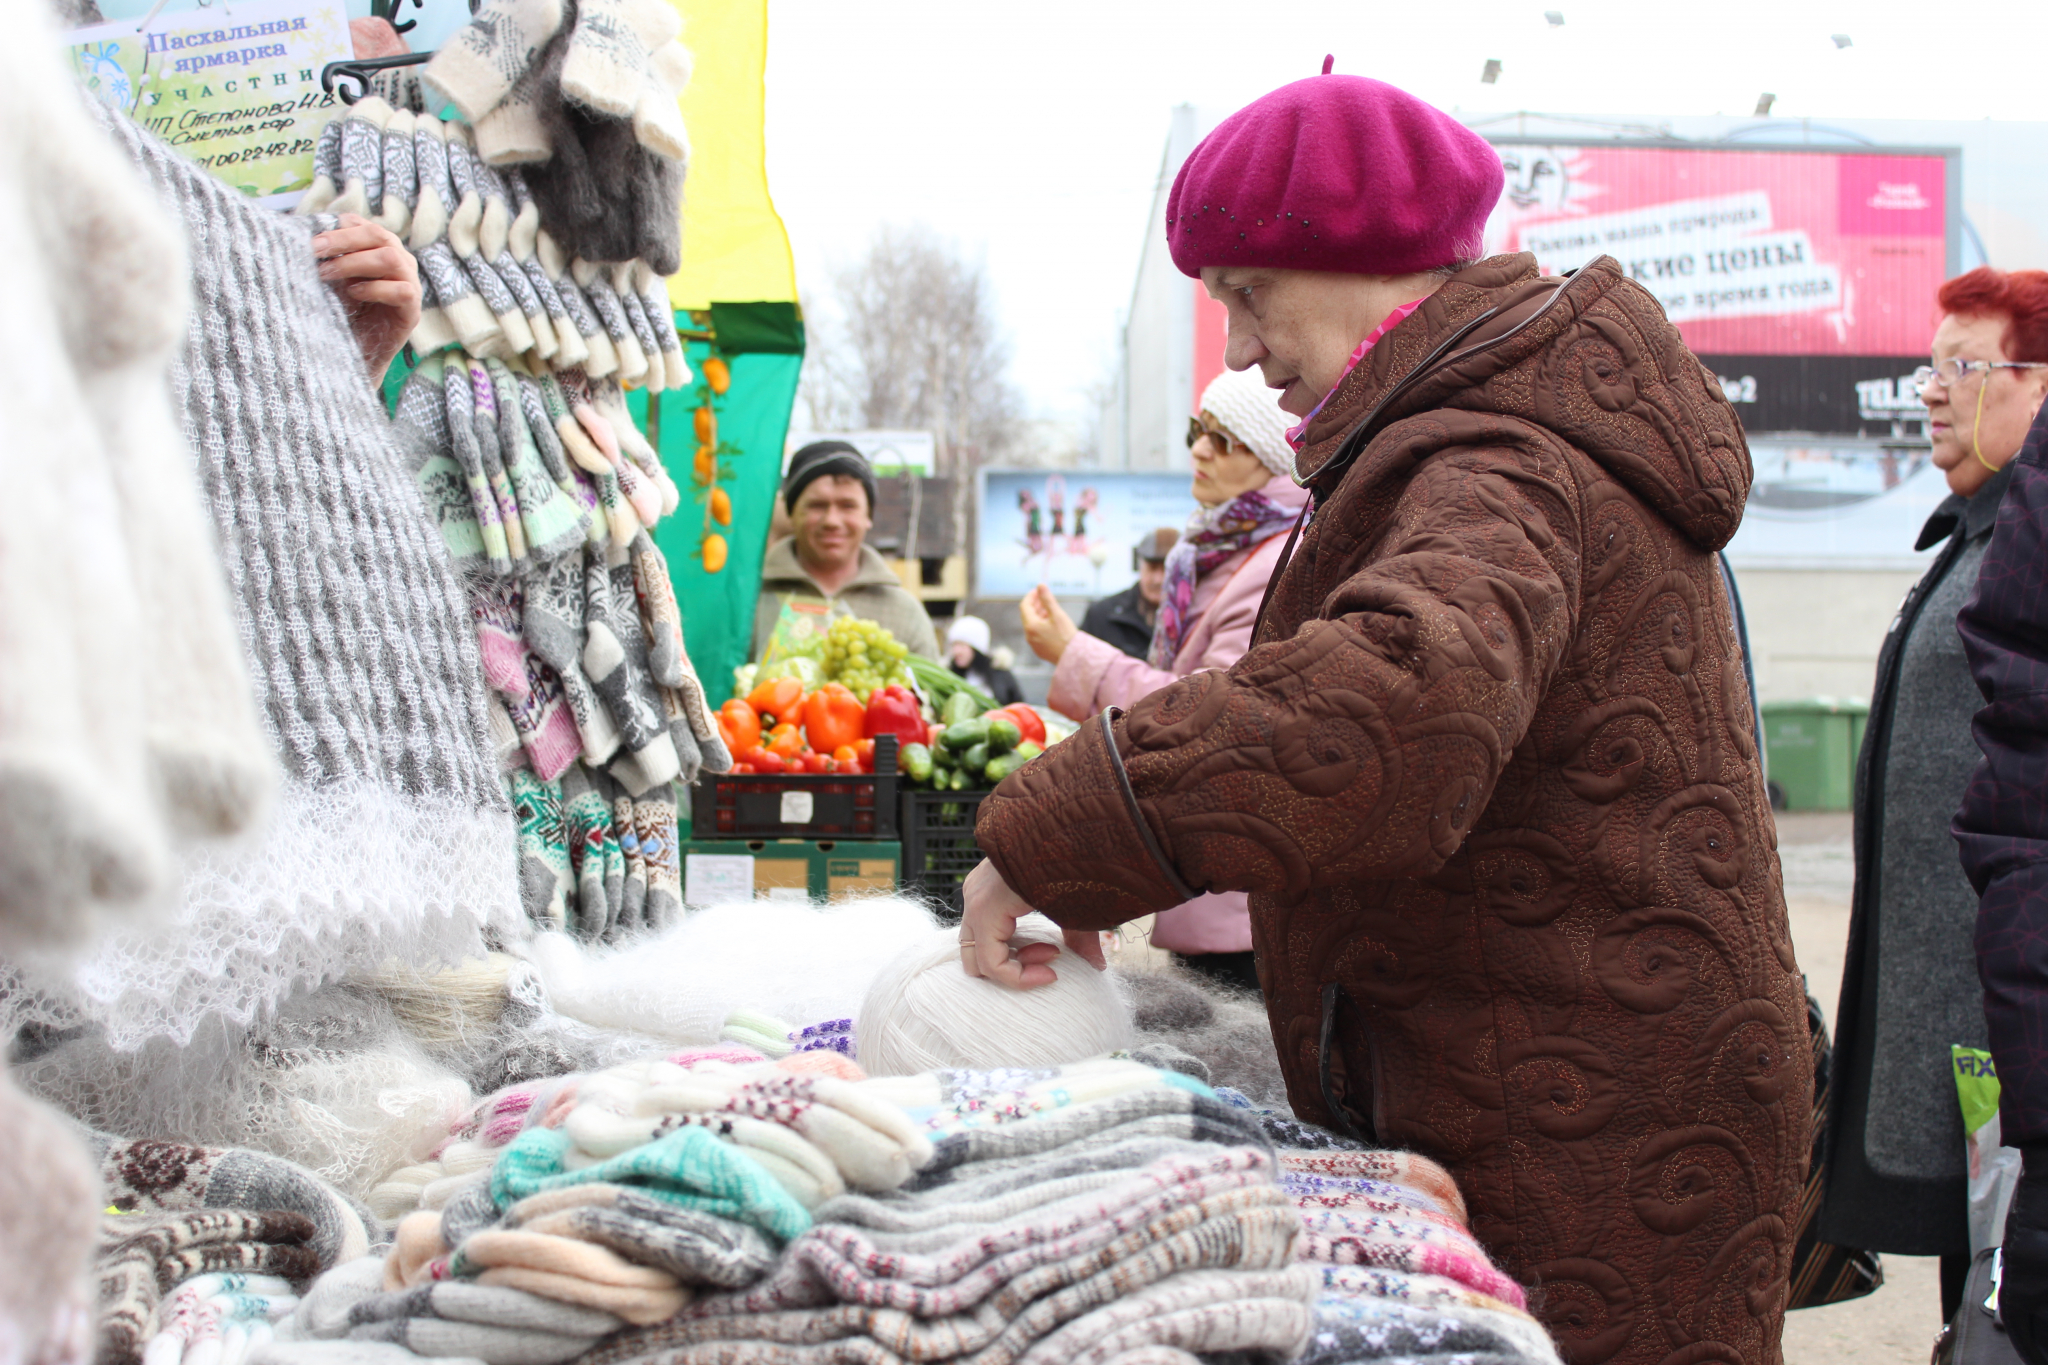 Акция добра: сервис доставки купит вязаные вещи у рязанских бабушек и передаст их курьерам